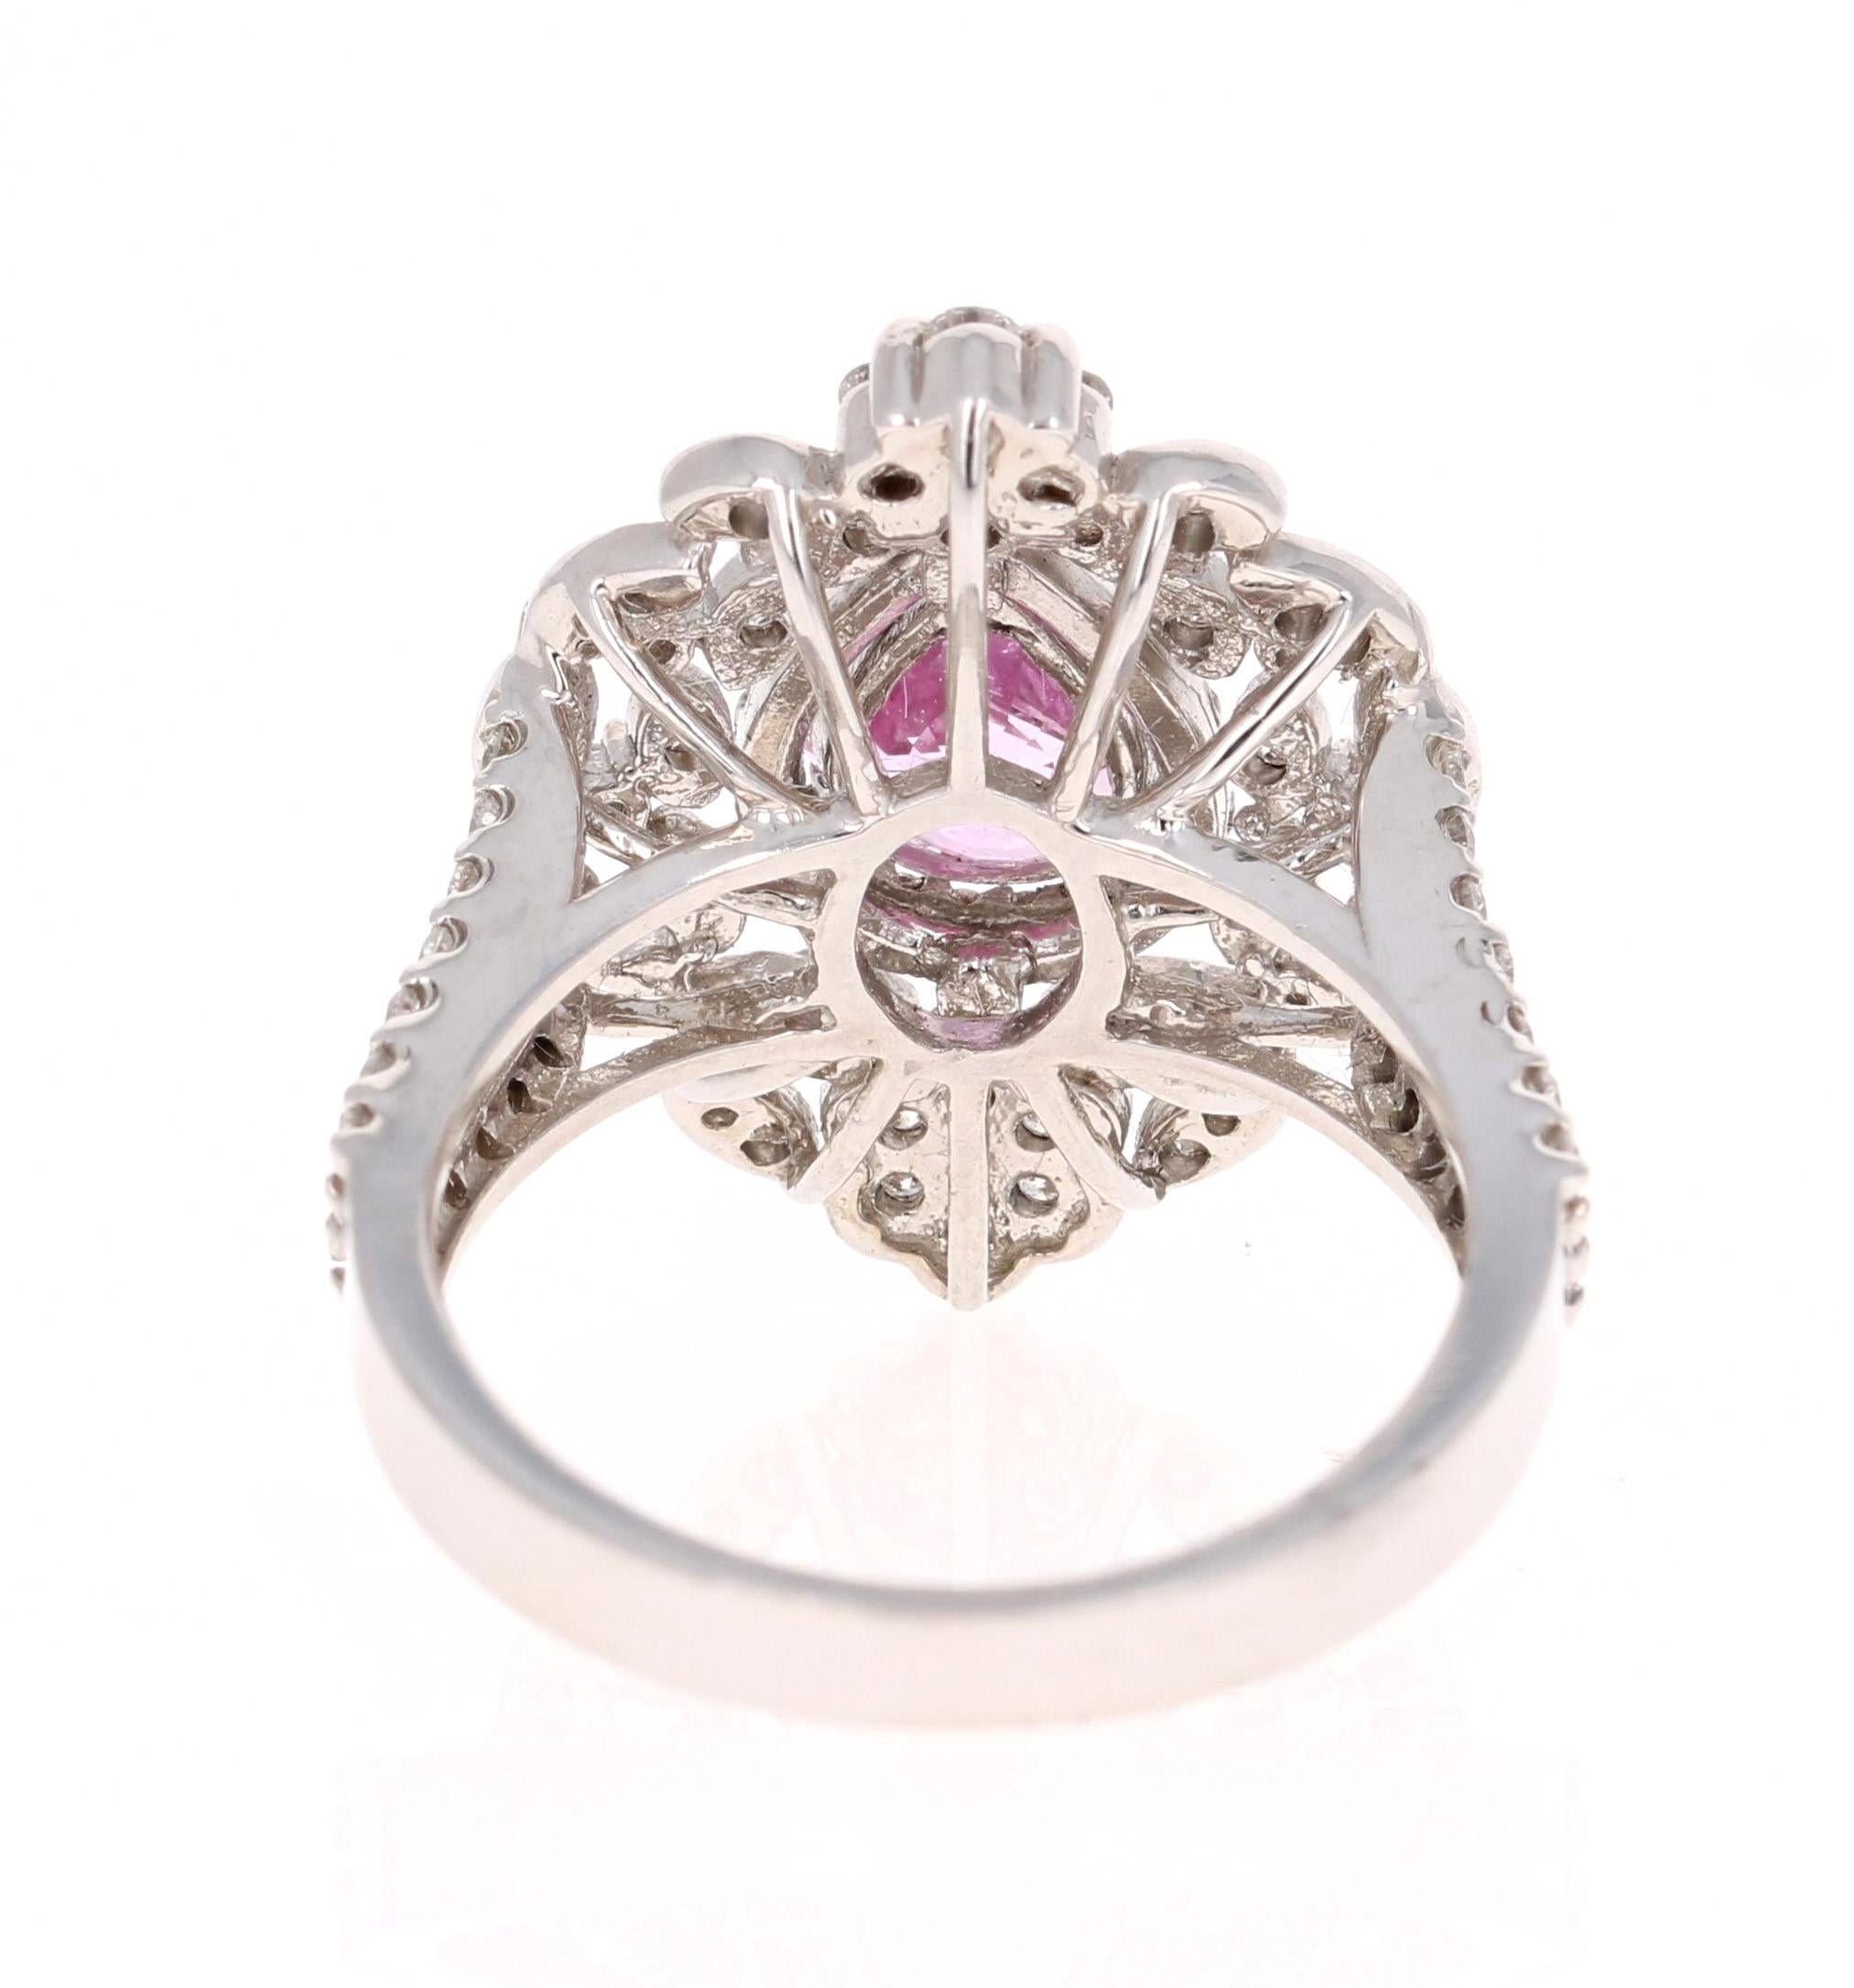 2.75 Carat Pink Sapphire Diamond White Gold Cocktail Ring (Tropfenschliff)